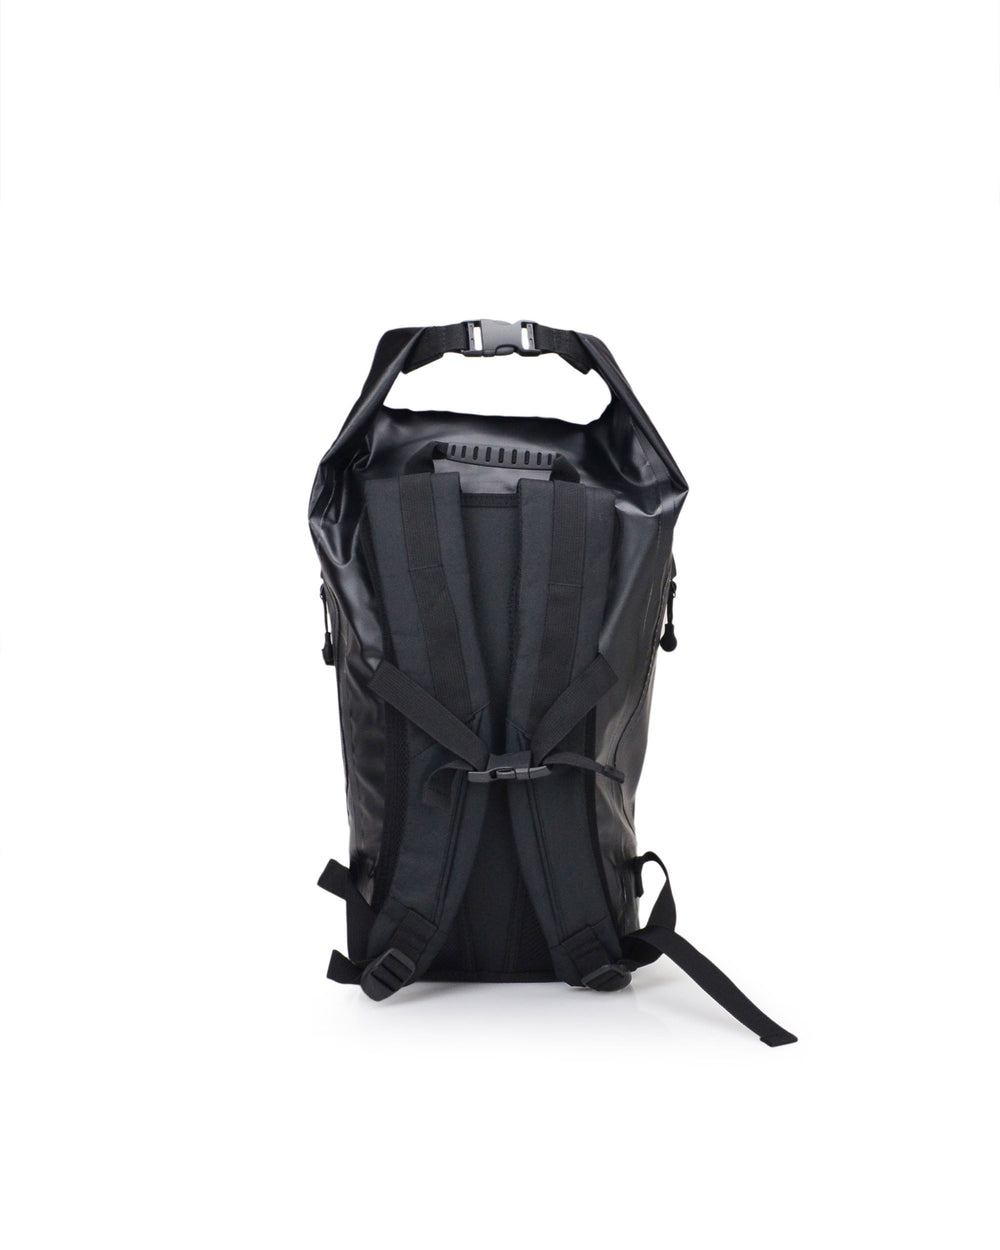 Advenire Waterproof Vertical Roll-Top Backpack - Black